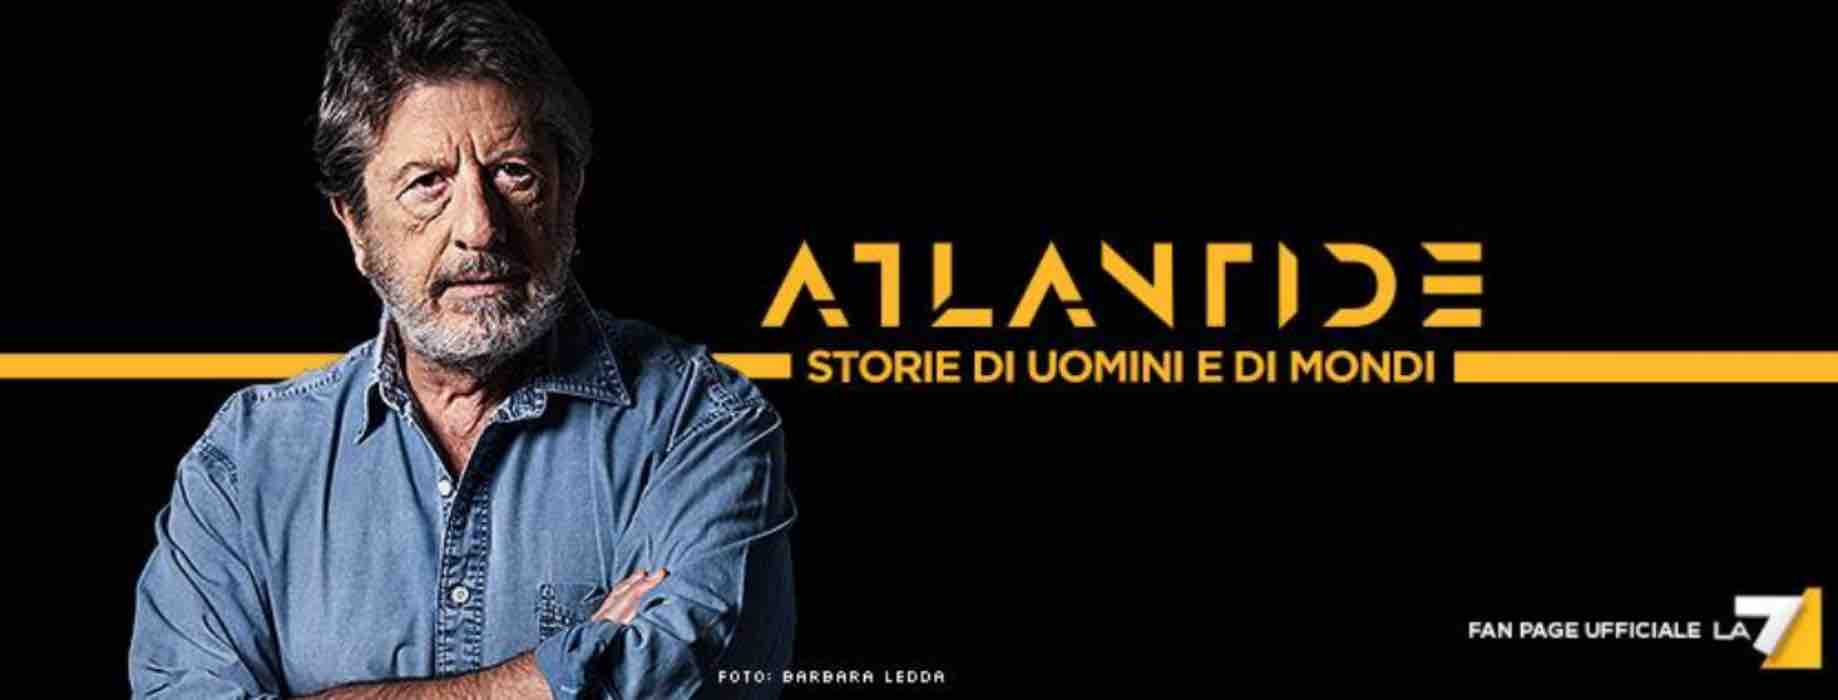 La, 7'Atlantide' stasera in tv: "1° maggio, una festa negata"